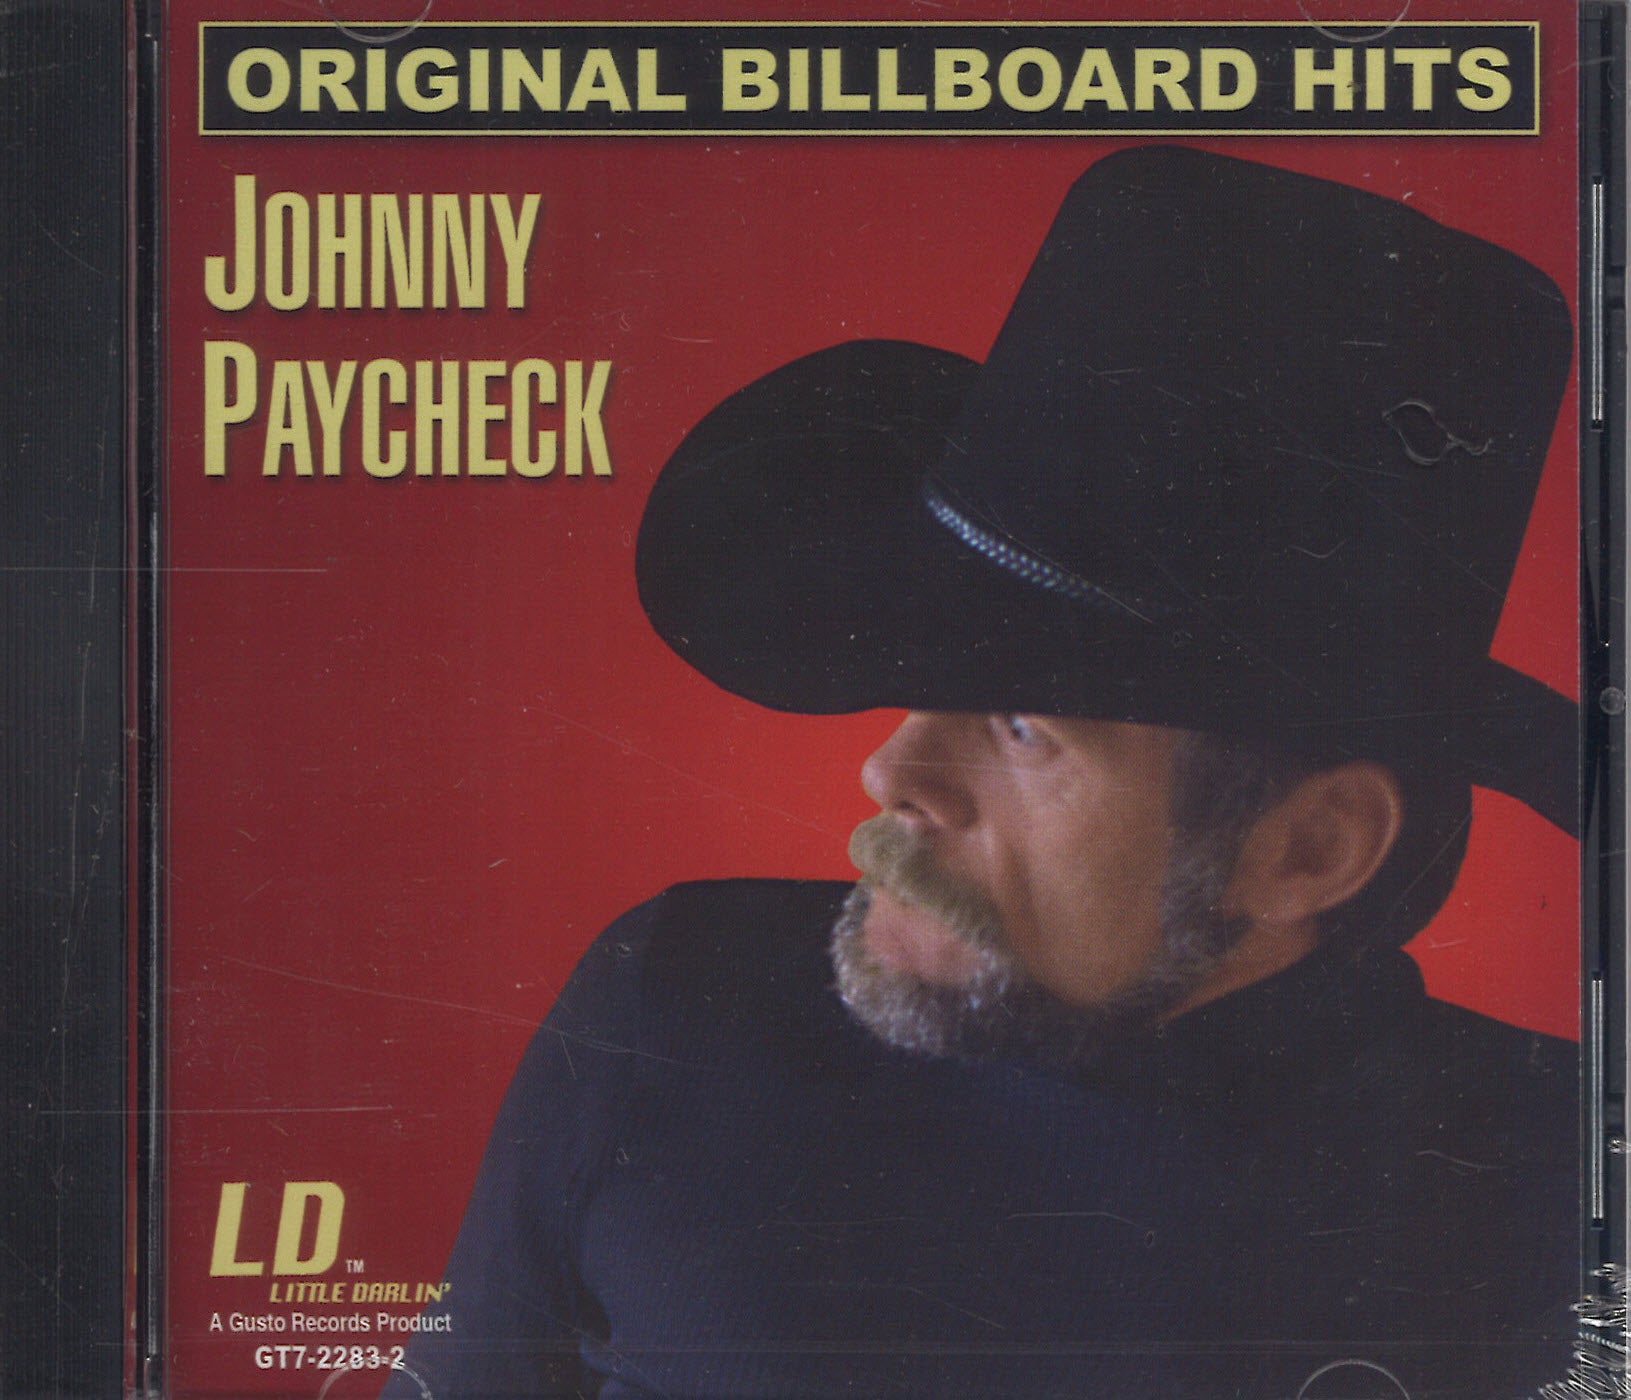 Johnny Paycheck Original Billboard Hits